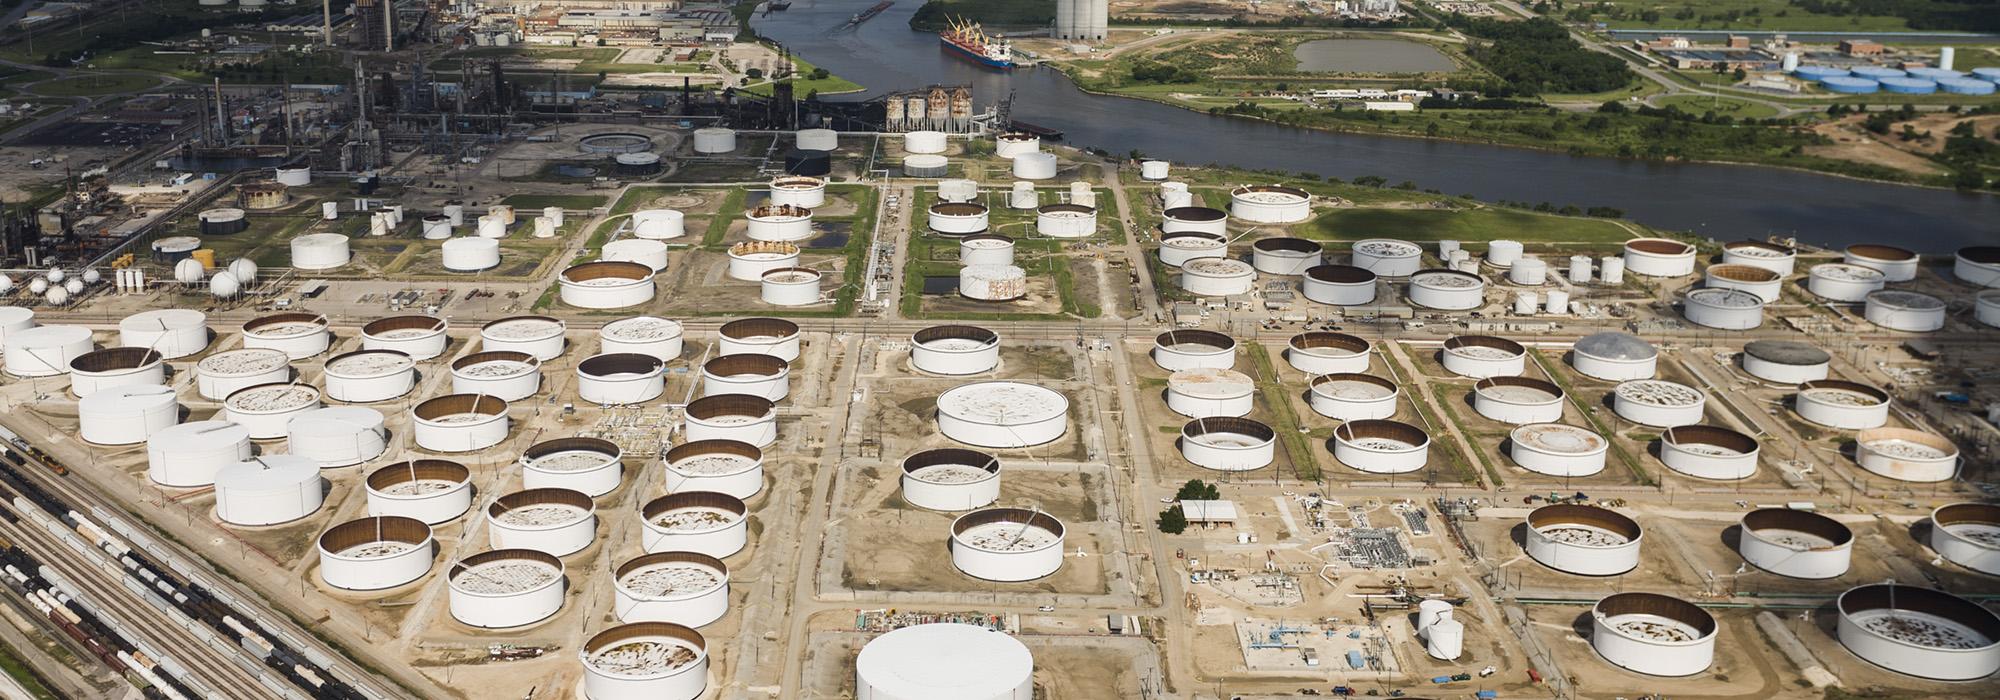 Houston Oil Field